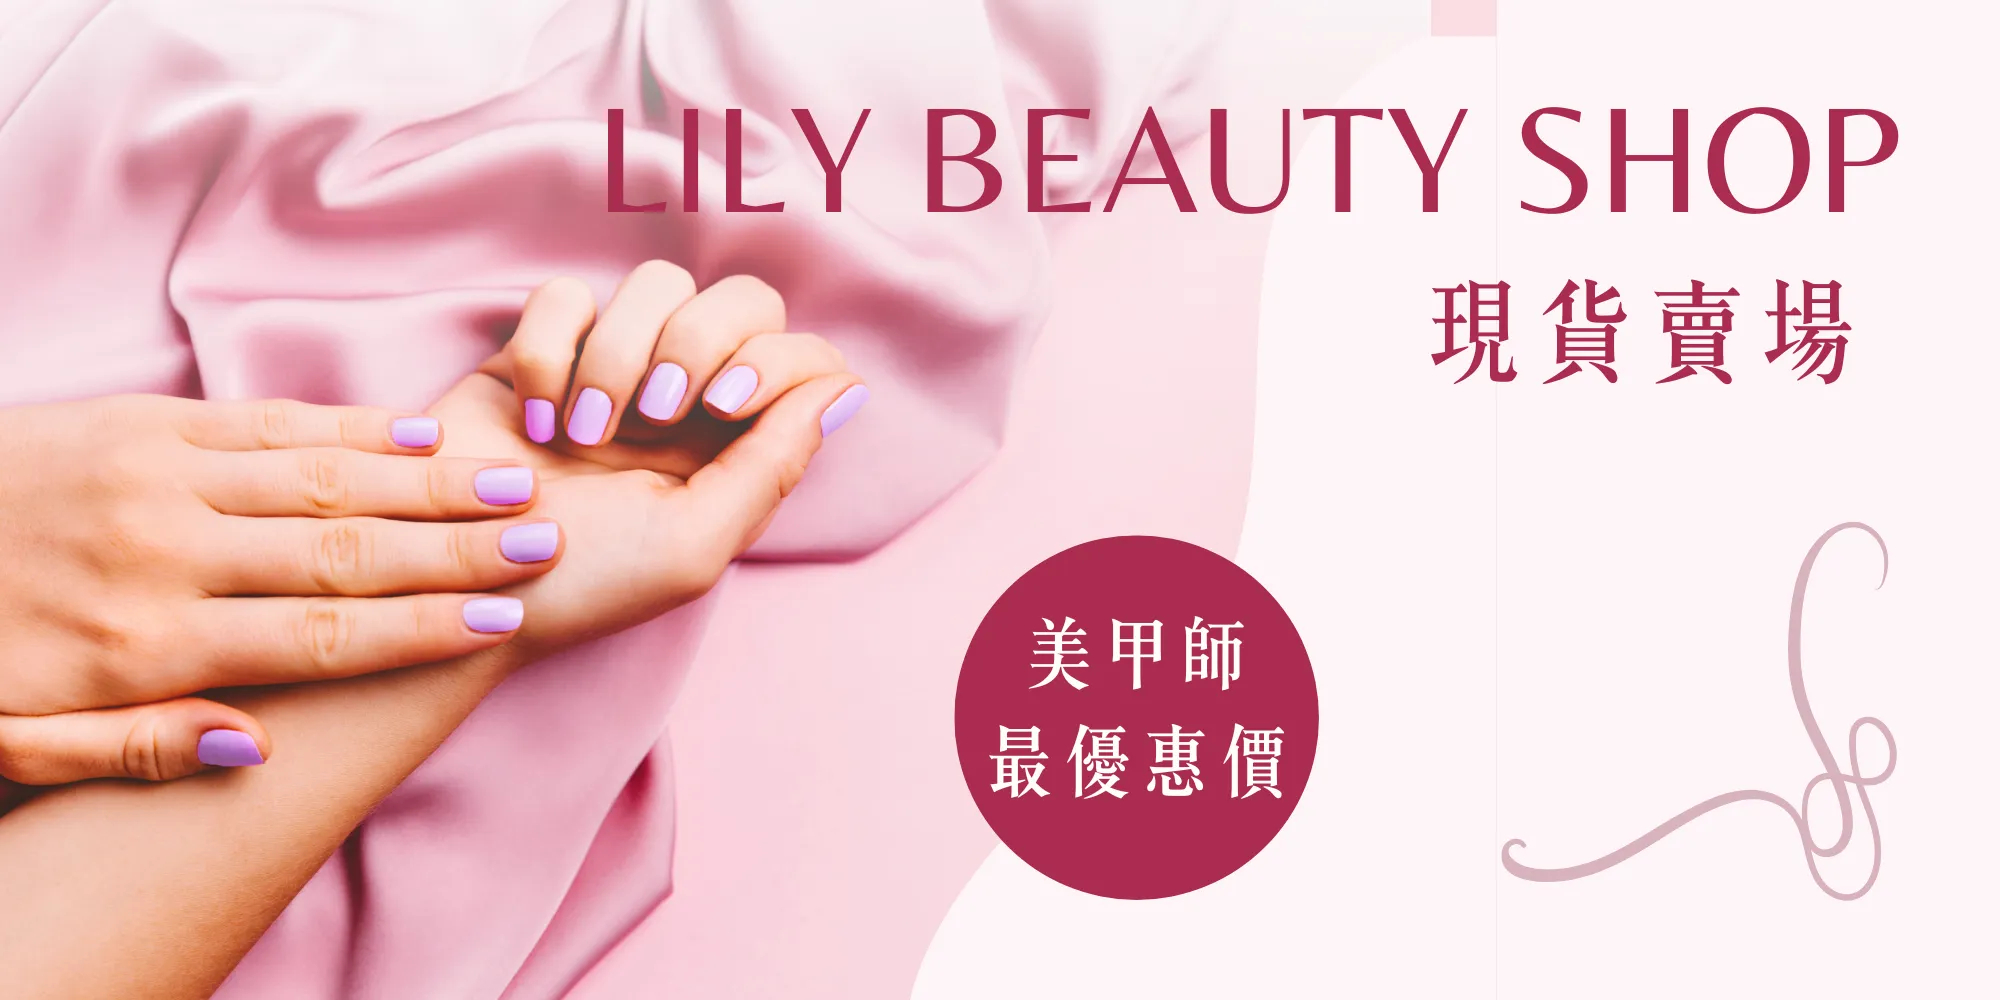 Lily beauty shop 美甲材料專賣, 線上商店| 蝦皮購物